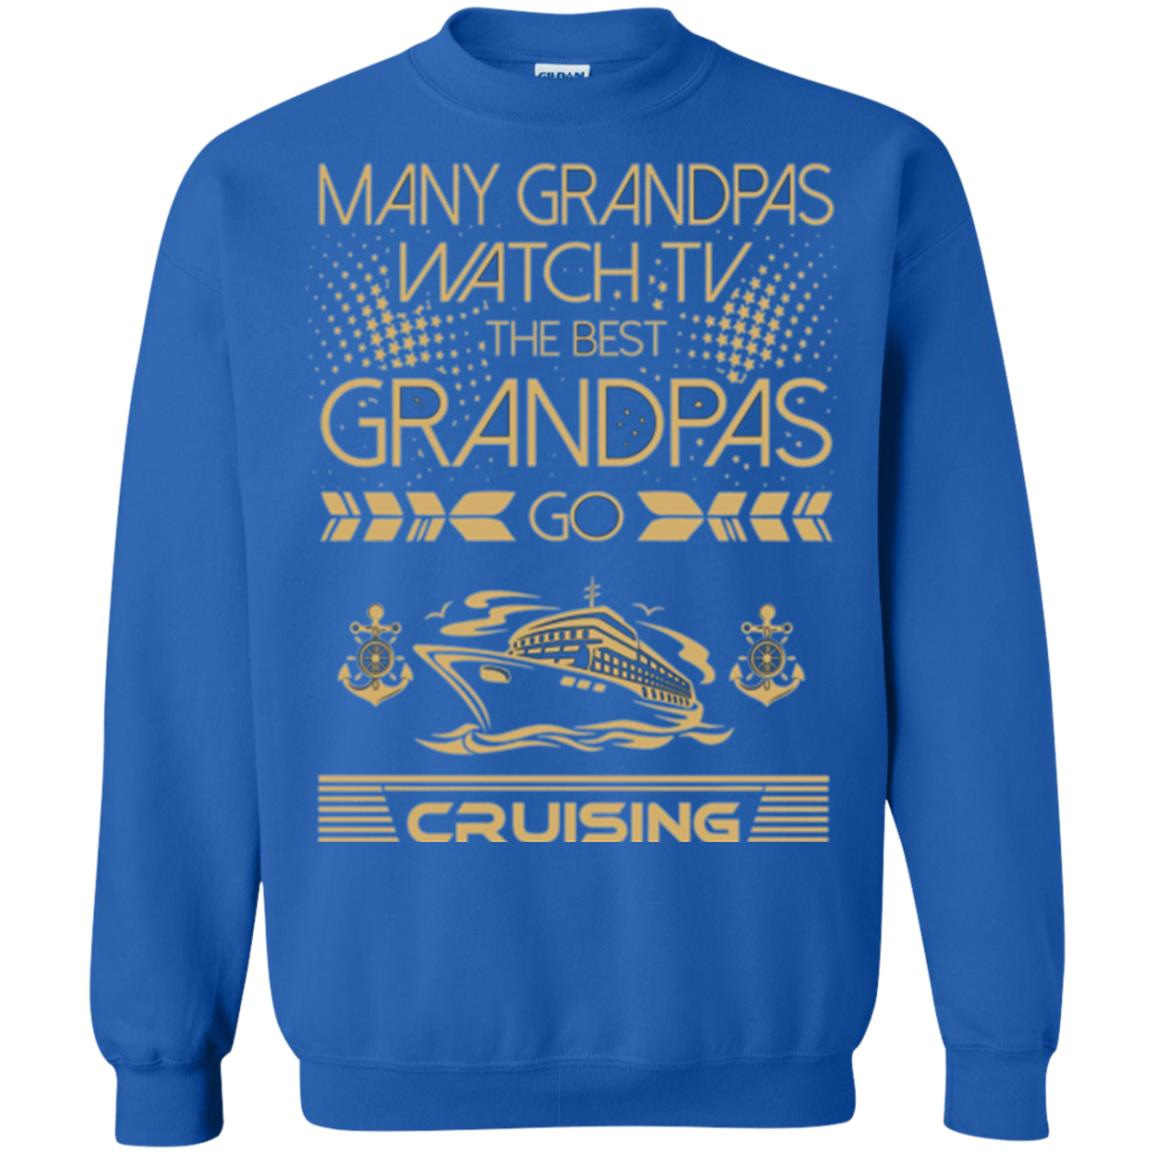 Inktee Store - Many Grandpas Watch Tv Best Cruising Outdoors Sweatshirt Image